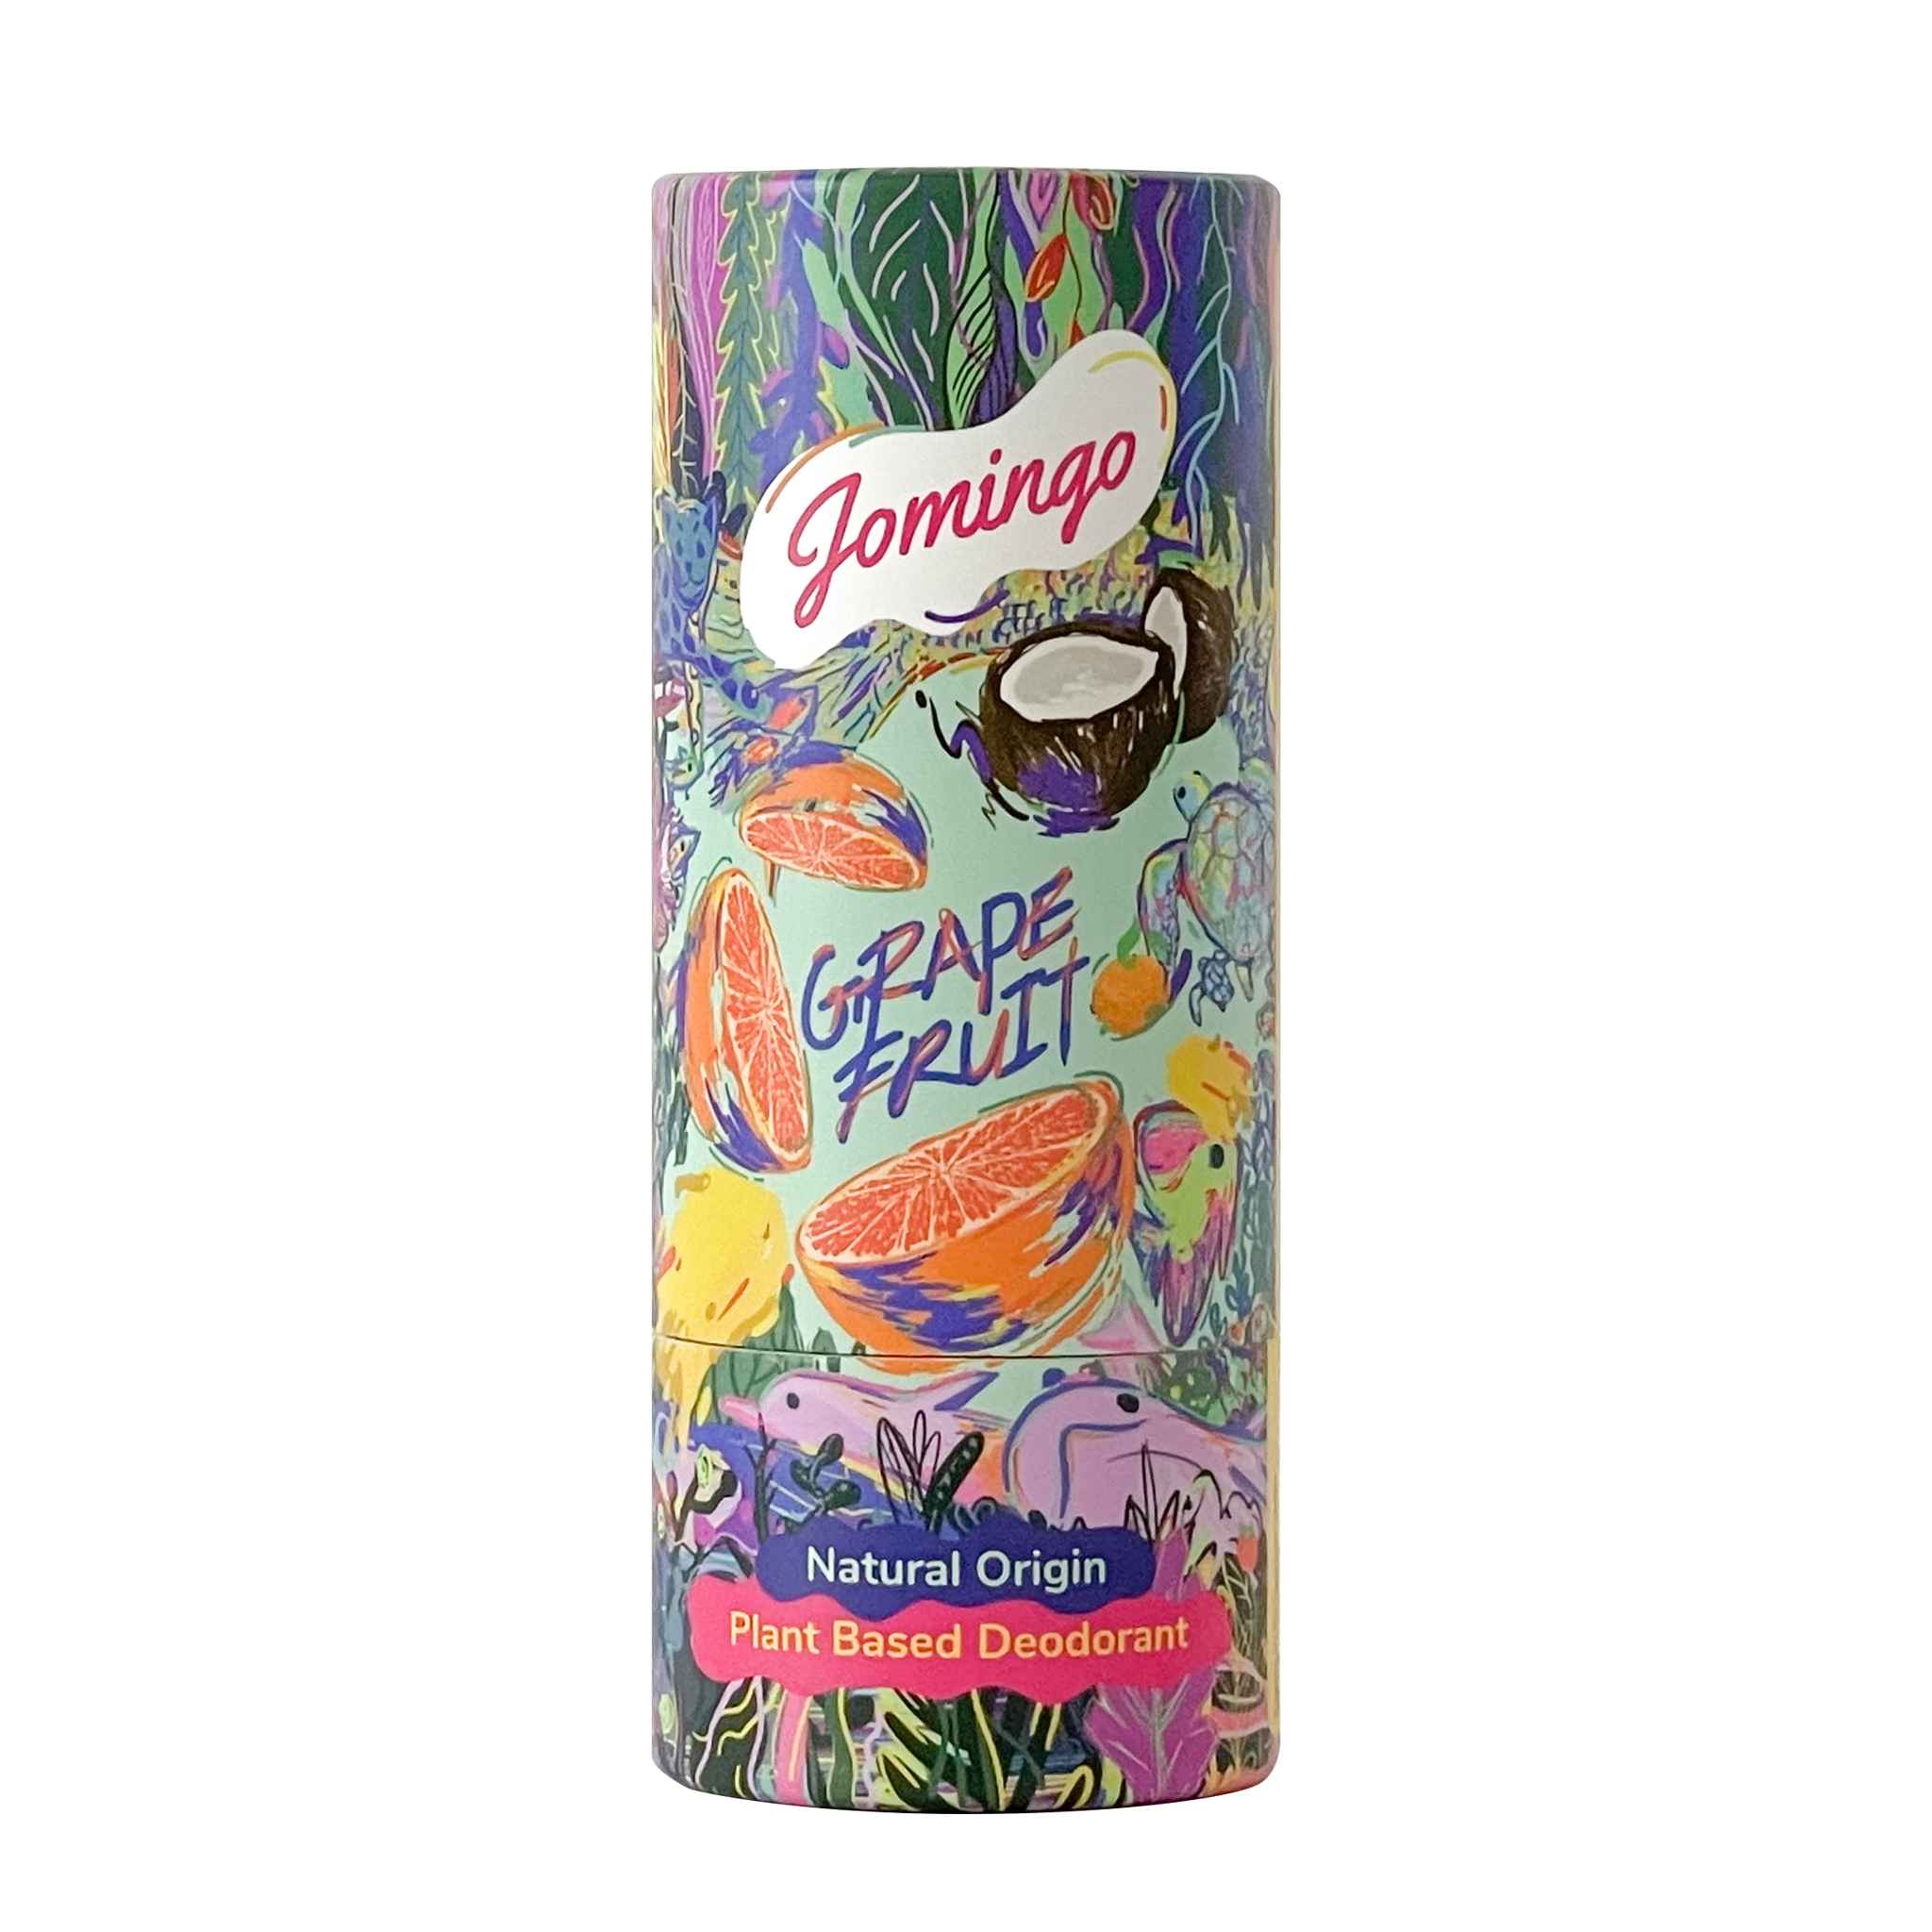 The Best Natural, Aluminium Free Deodorant Gift - Grapefruit Deodorant and Natural Konjac Sponge